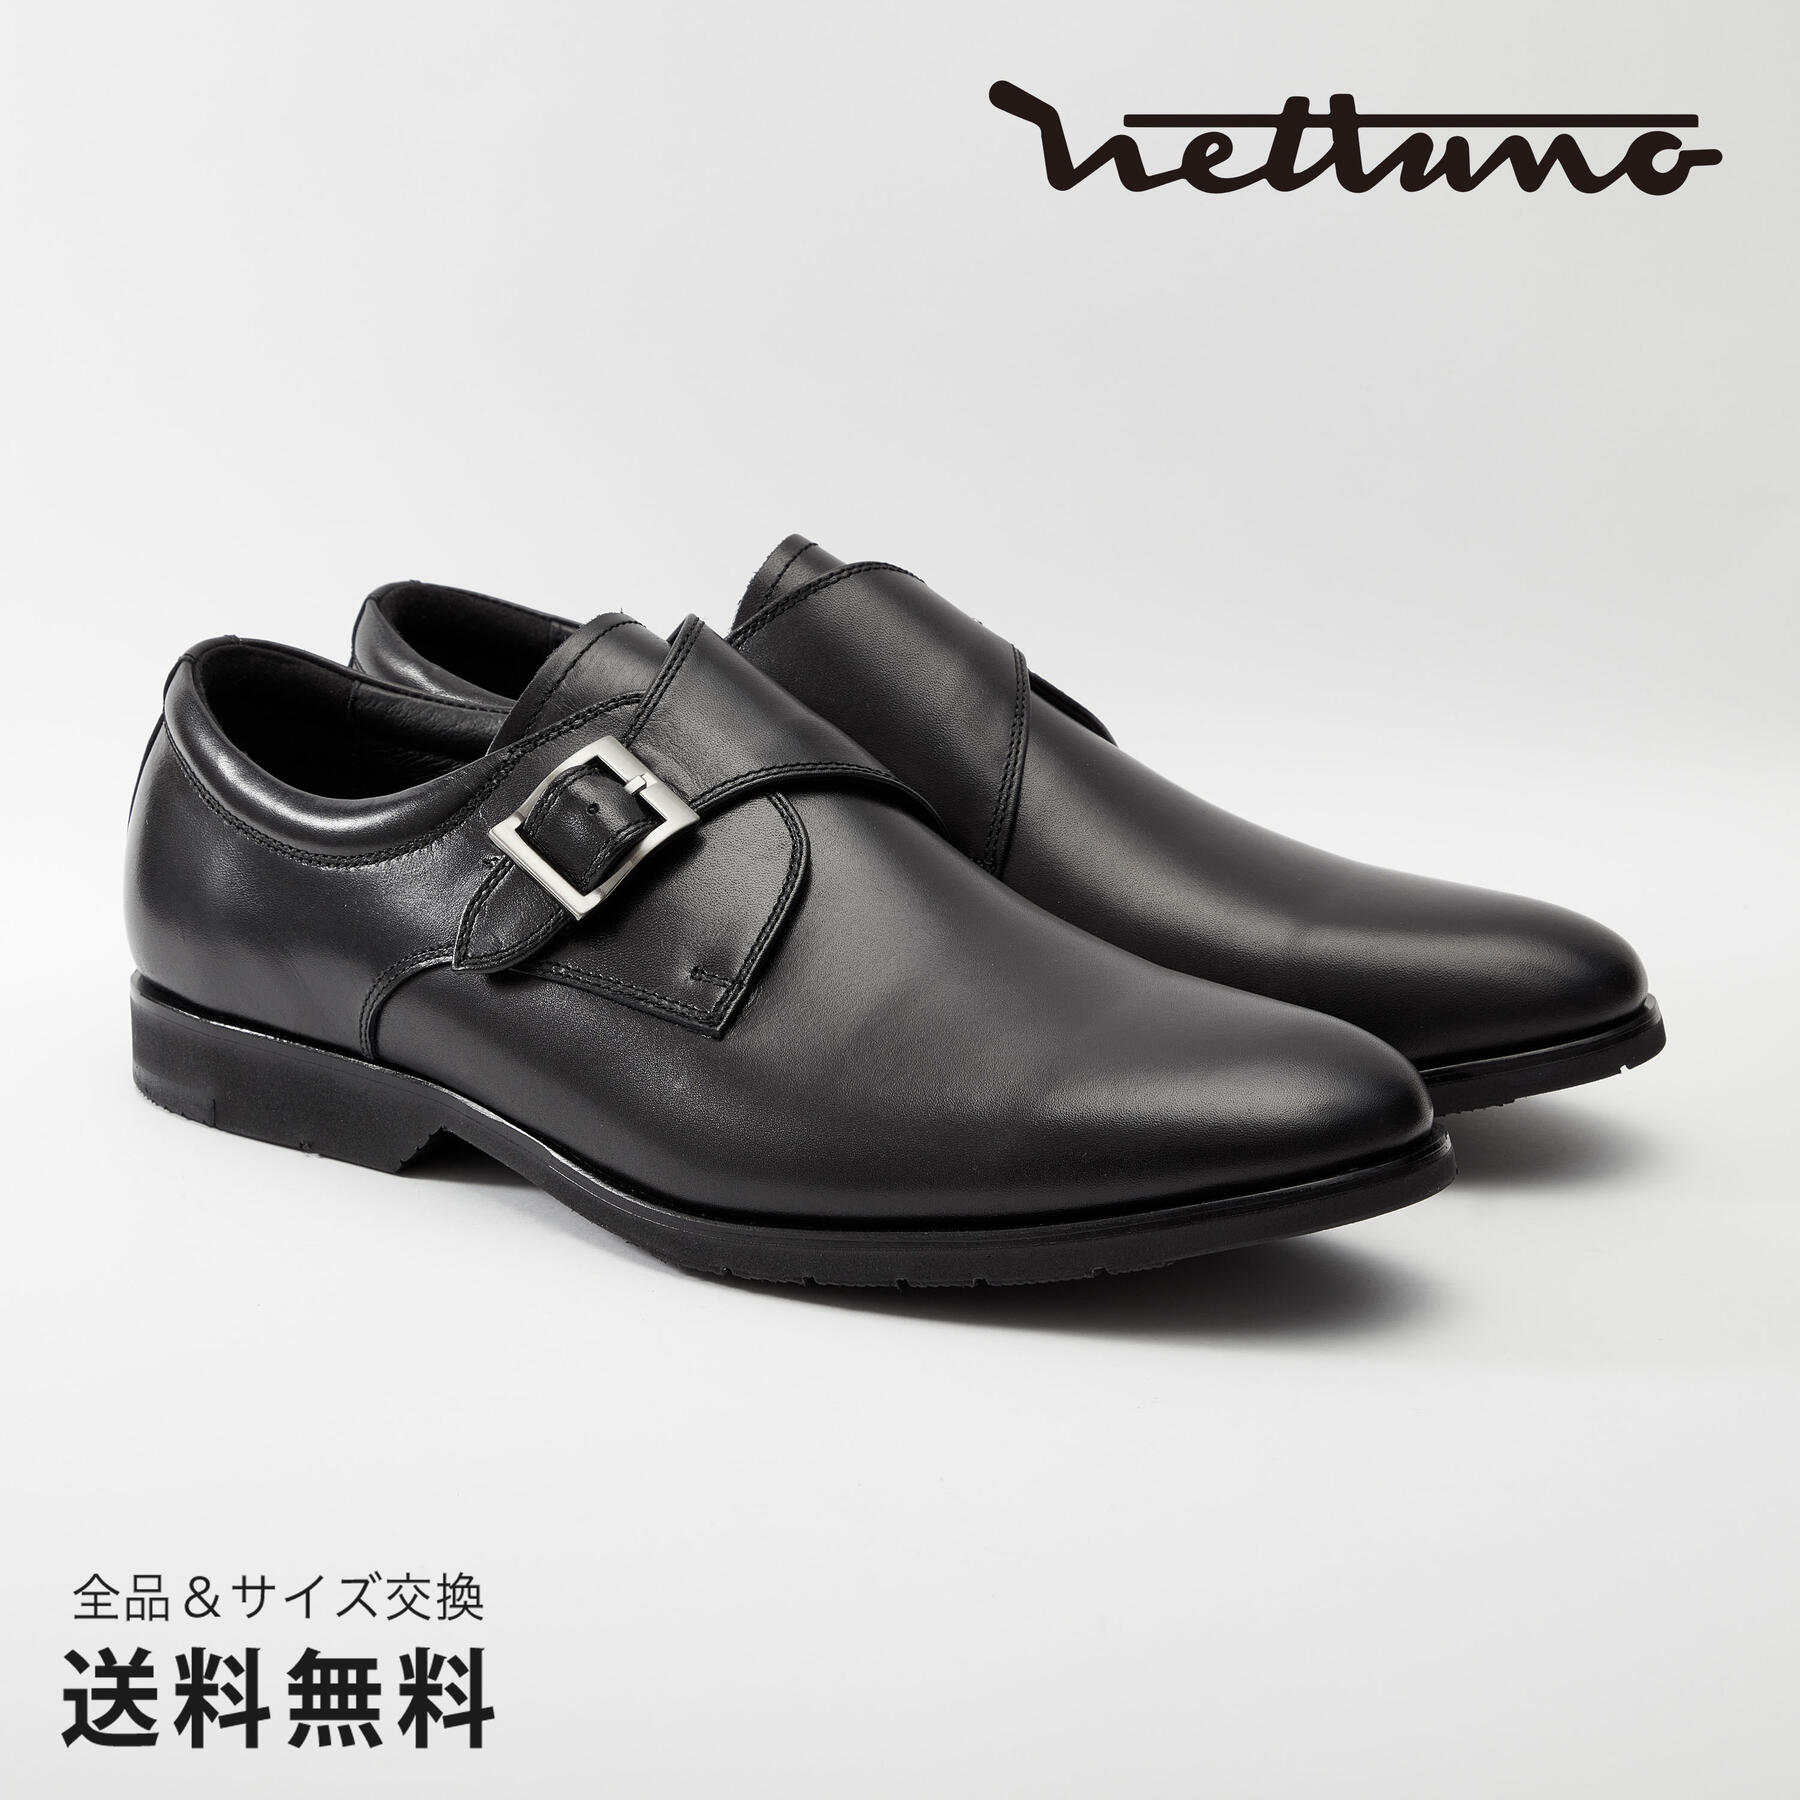 NETTUNO ネッツーノ モンクストラップ 4E 革靴 防水キップレザー ラバーソール ブラック セメンテッド 黒 BLACK 64620 日本 靴 メンズ靴 ビジネスシューズ サイズ 24.0 - 27.0cm 